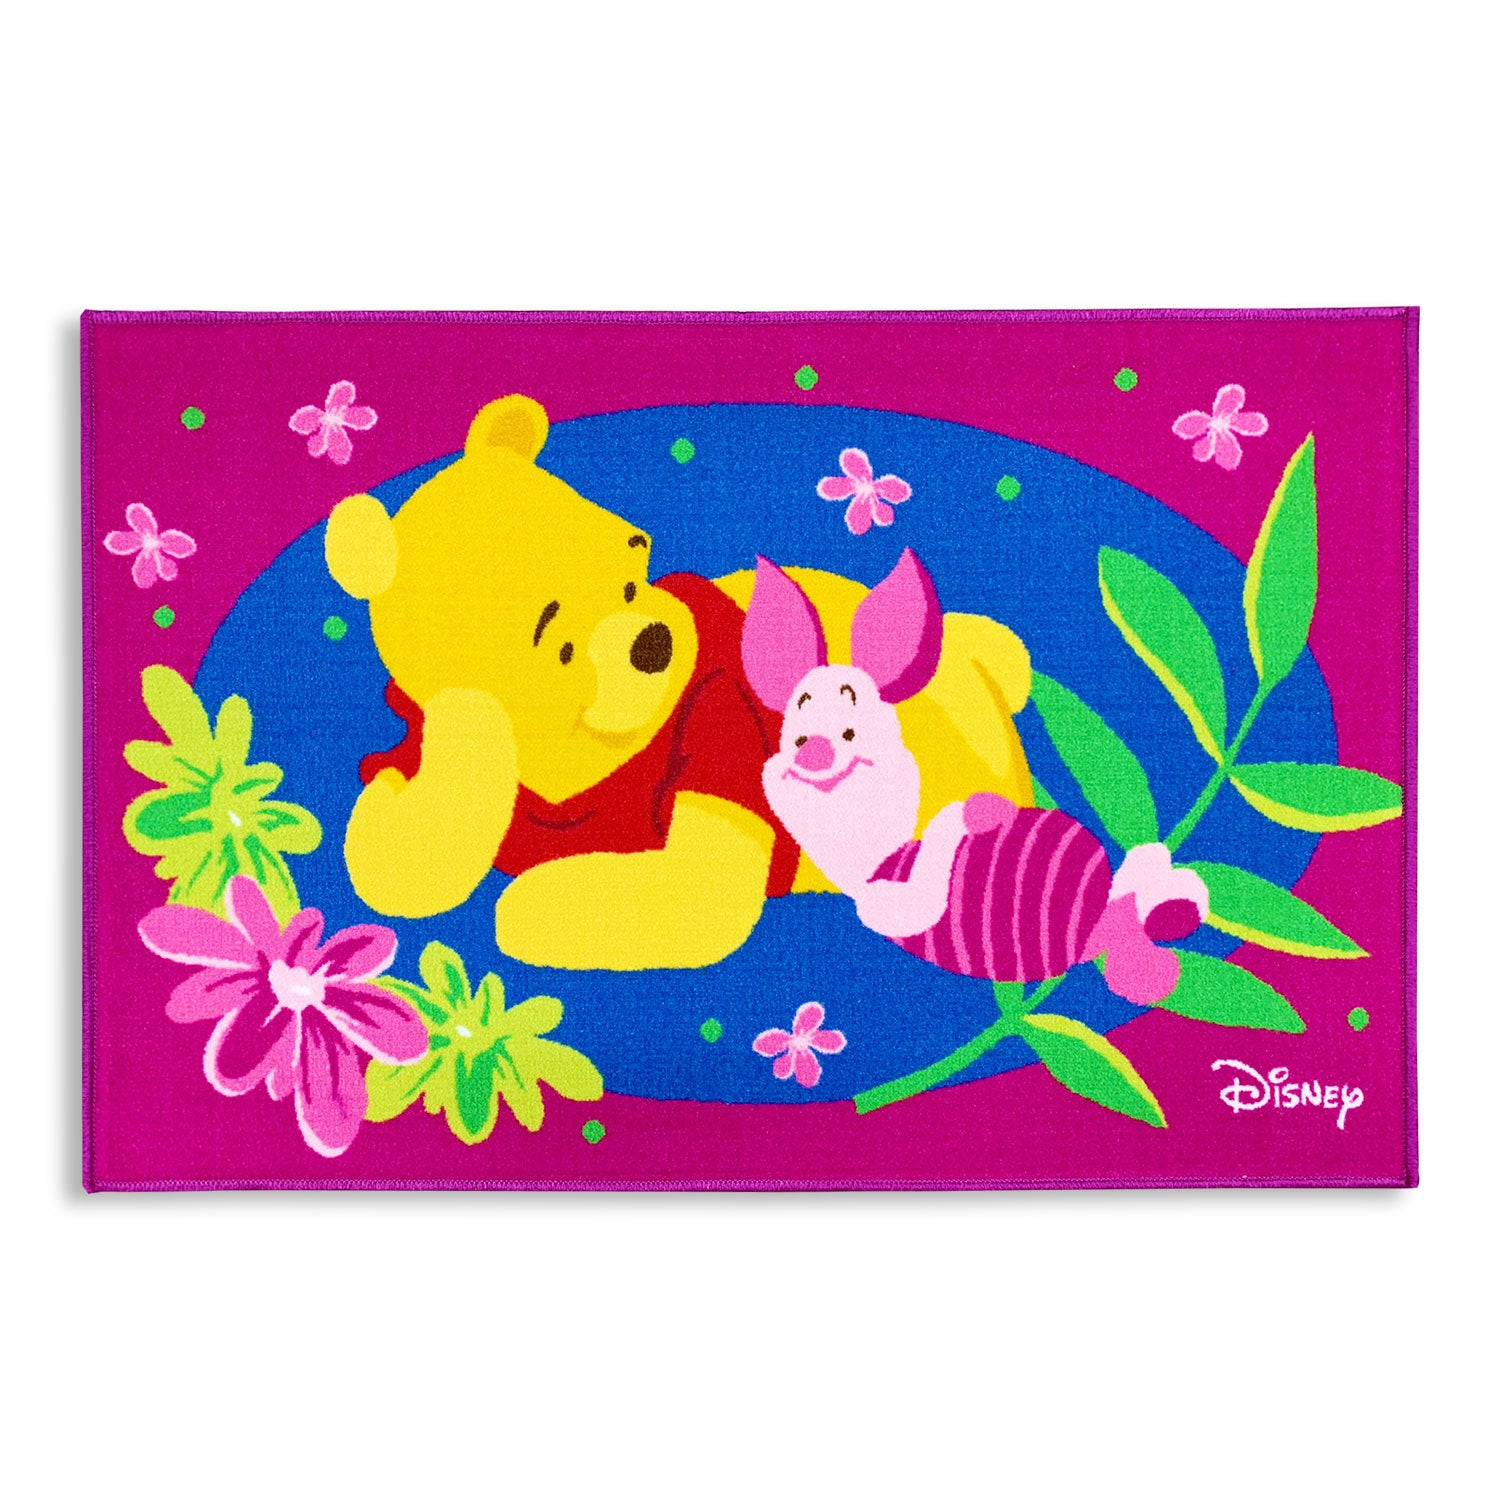 Tappeto antiscivolo cameretta bambini Disney Winnie the Pooh 80x120 cm 4853